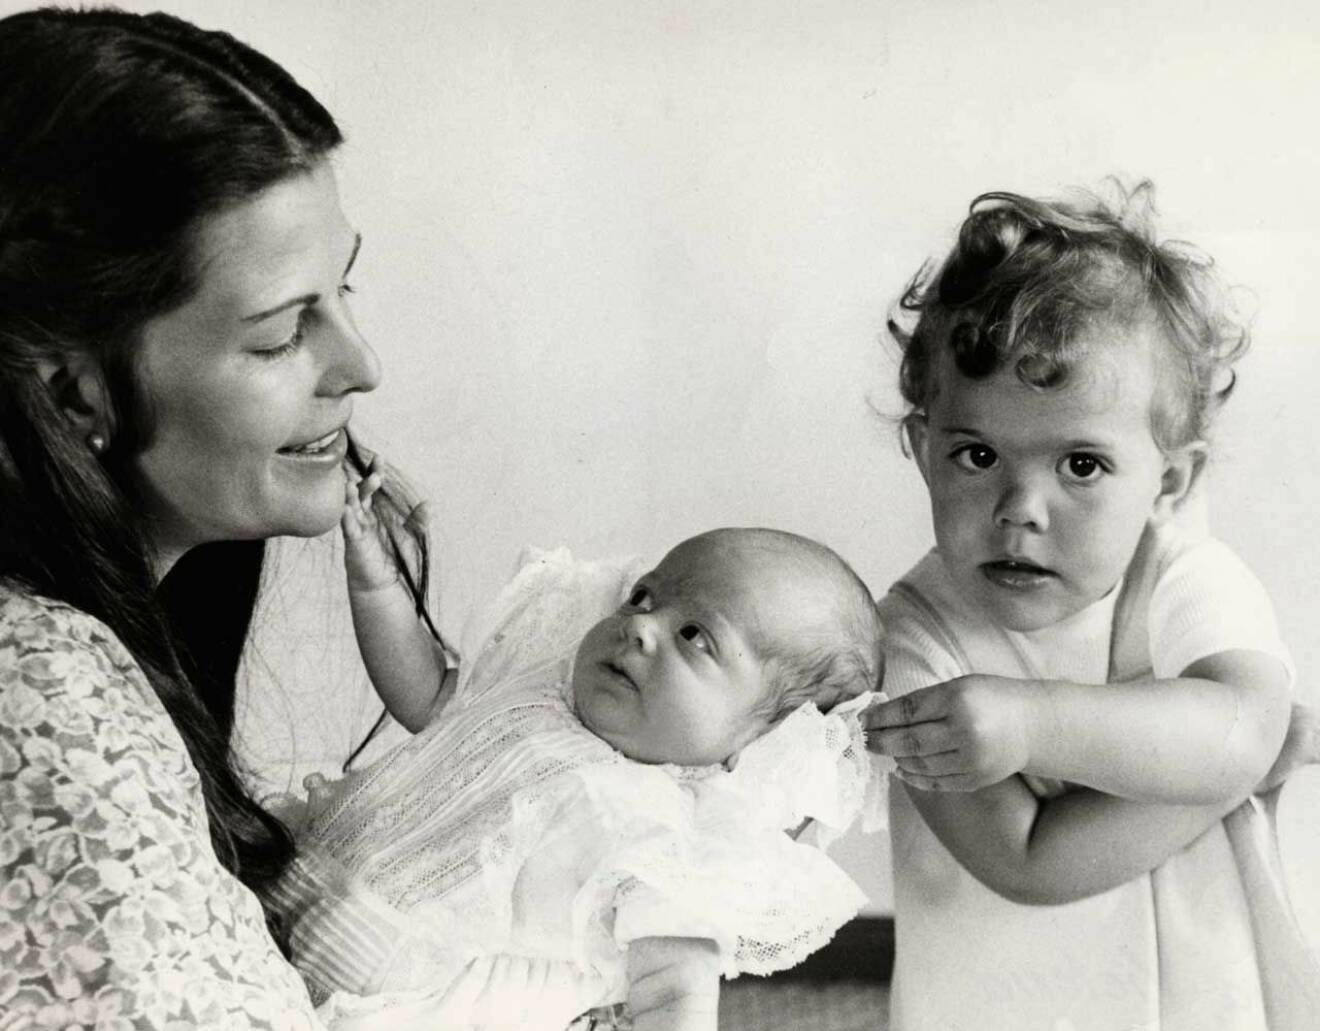 Sveriges nyfödde kronprins Carl Philip 1979. Men det varade bara i sju månader, innan storasyster Victoria tog över titeln. 